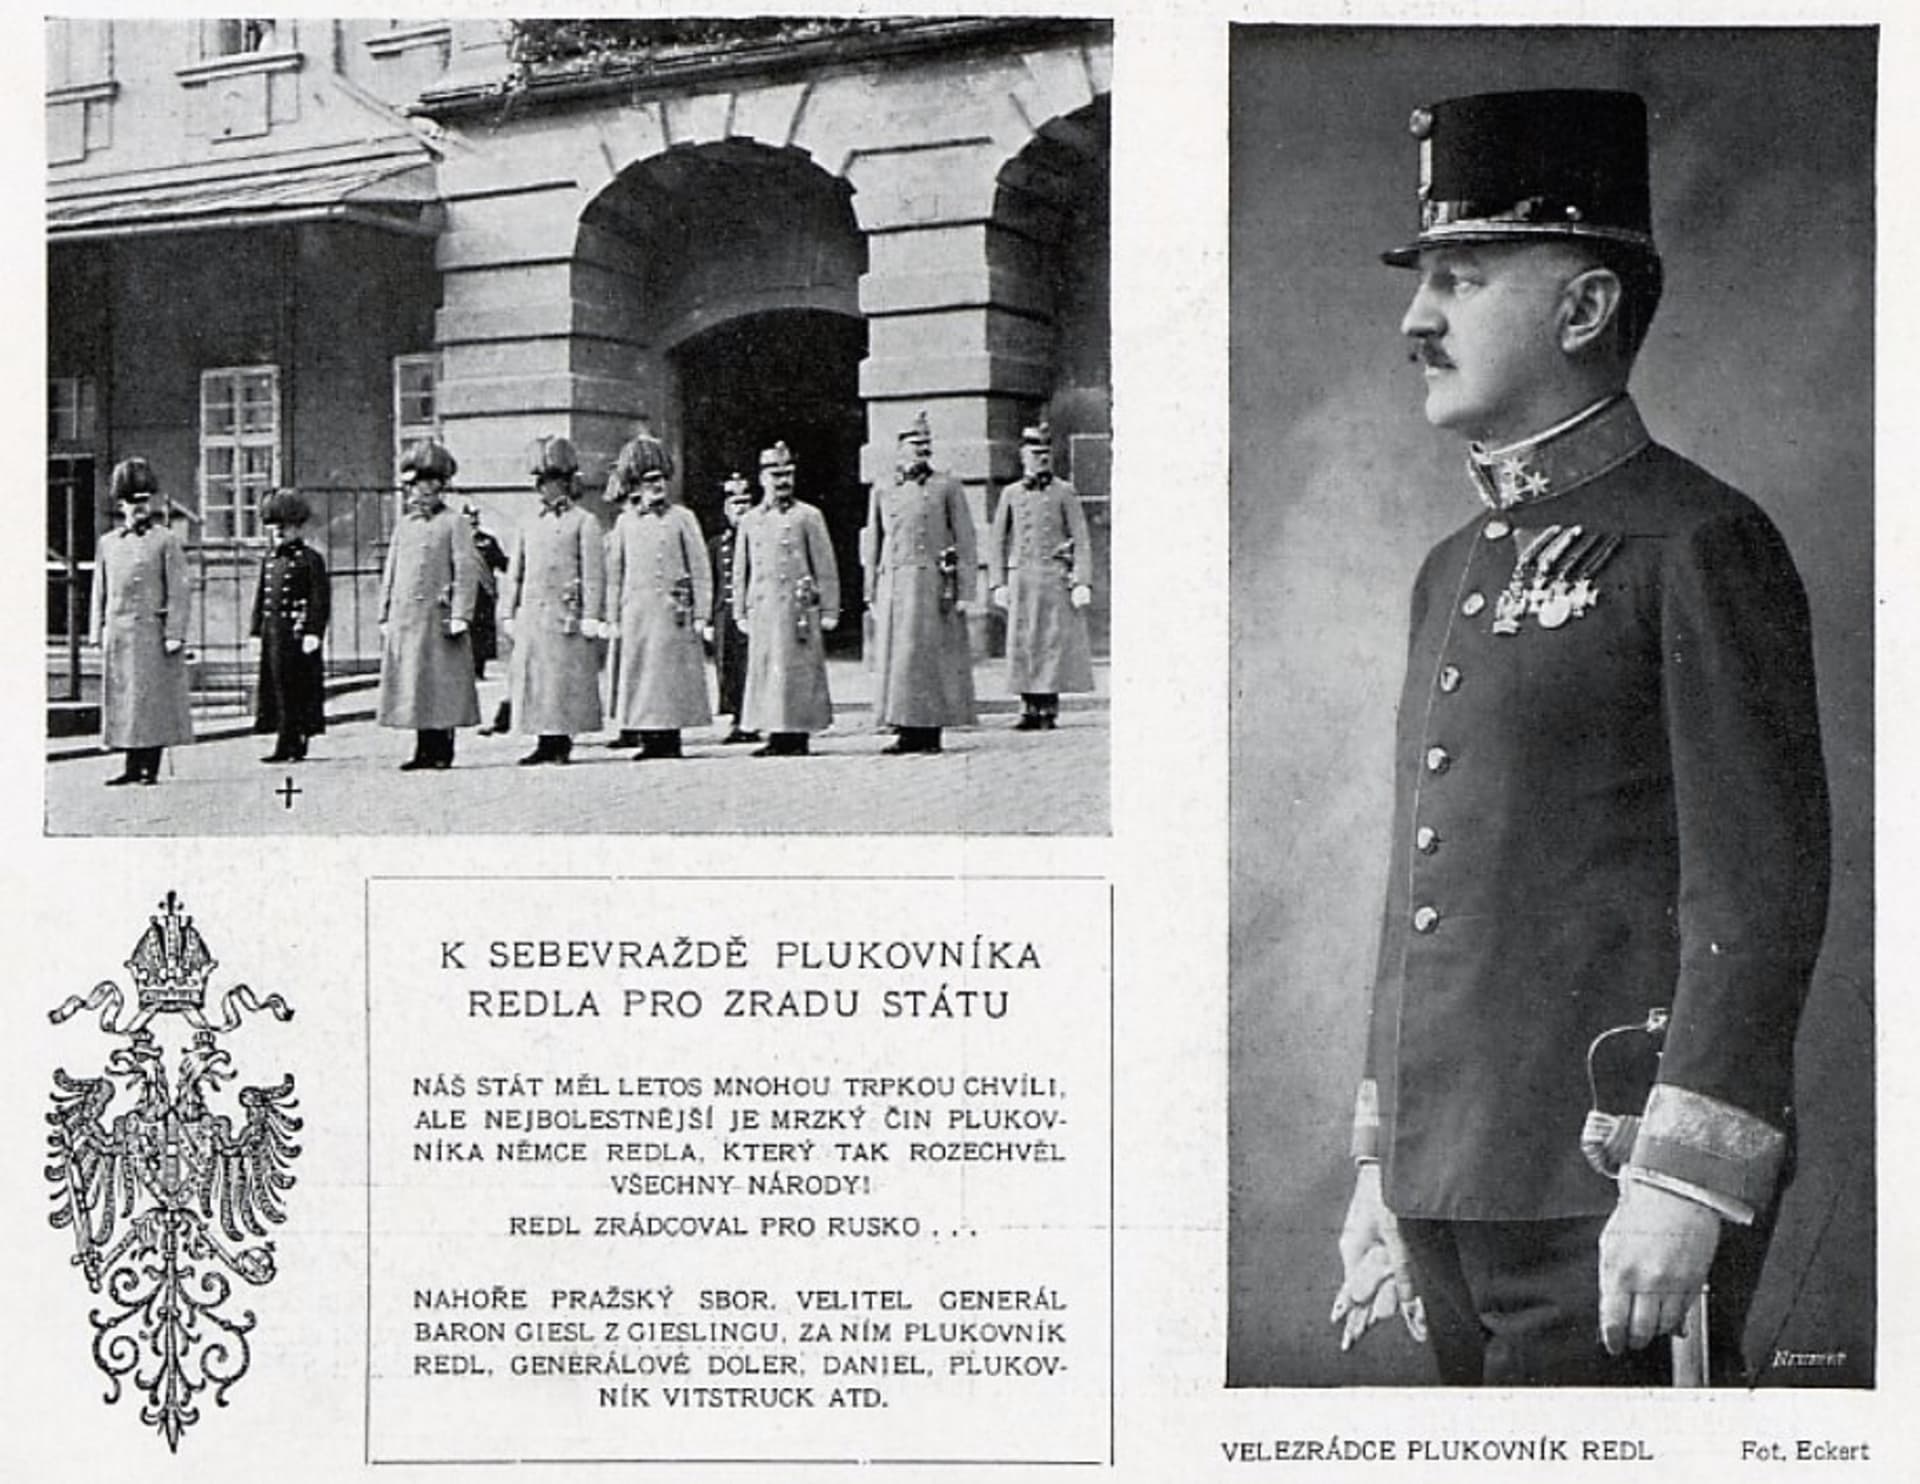 Mrzký čin plukovníka Redla. Tak informoval o ruském špionovi časopis Český svět v červnu 1913.